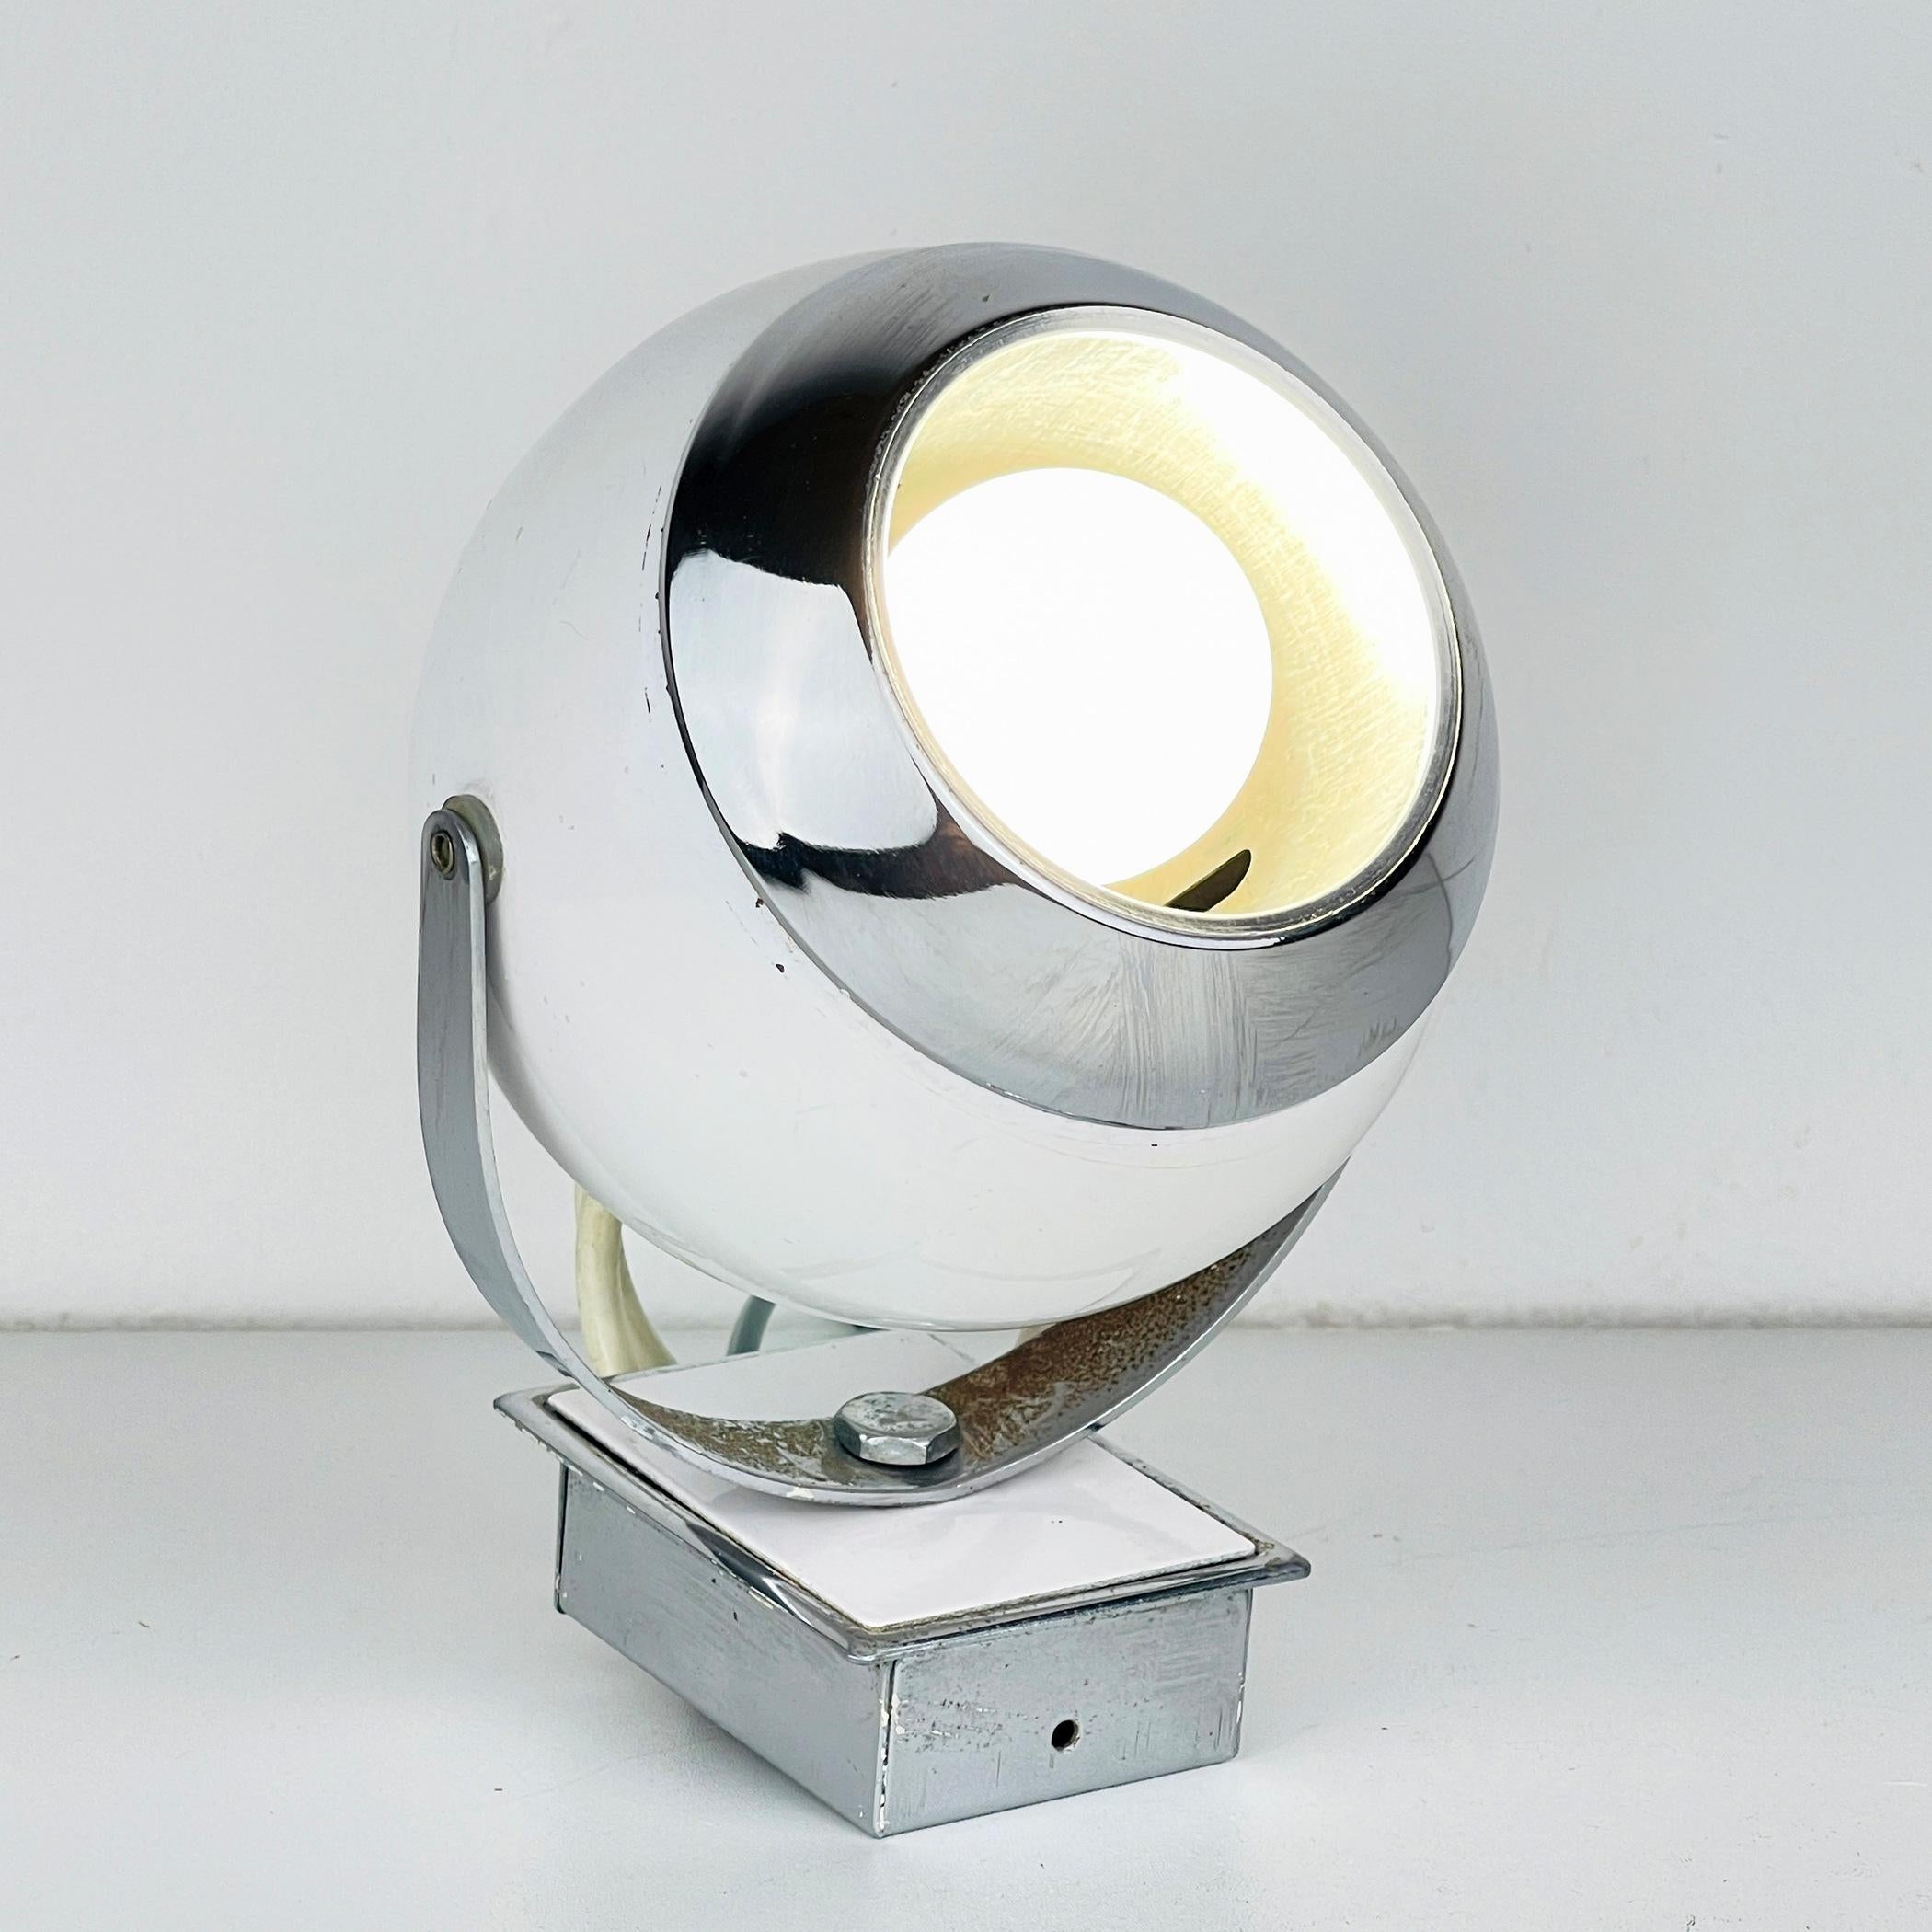 Voici une exceptionnelle applique vintage des années 1960, tout droit sortie du cœur du design italien. Cette lampe est un véritable témoignage de l'ingéniosité de l'ère spatiale. Cette élégante applique murale, affectueusement connue sous le nom de